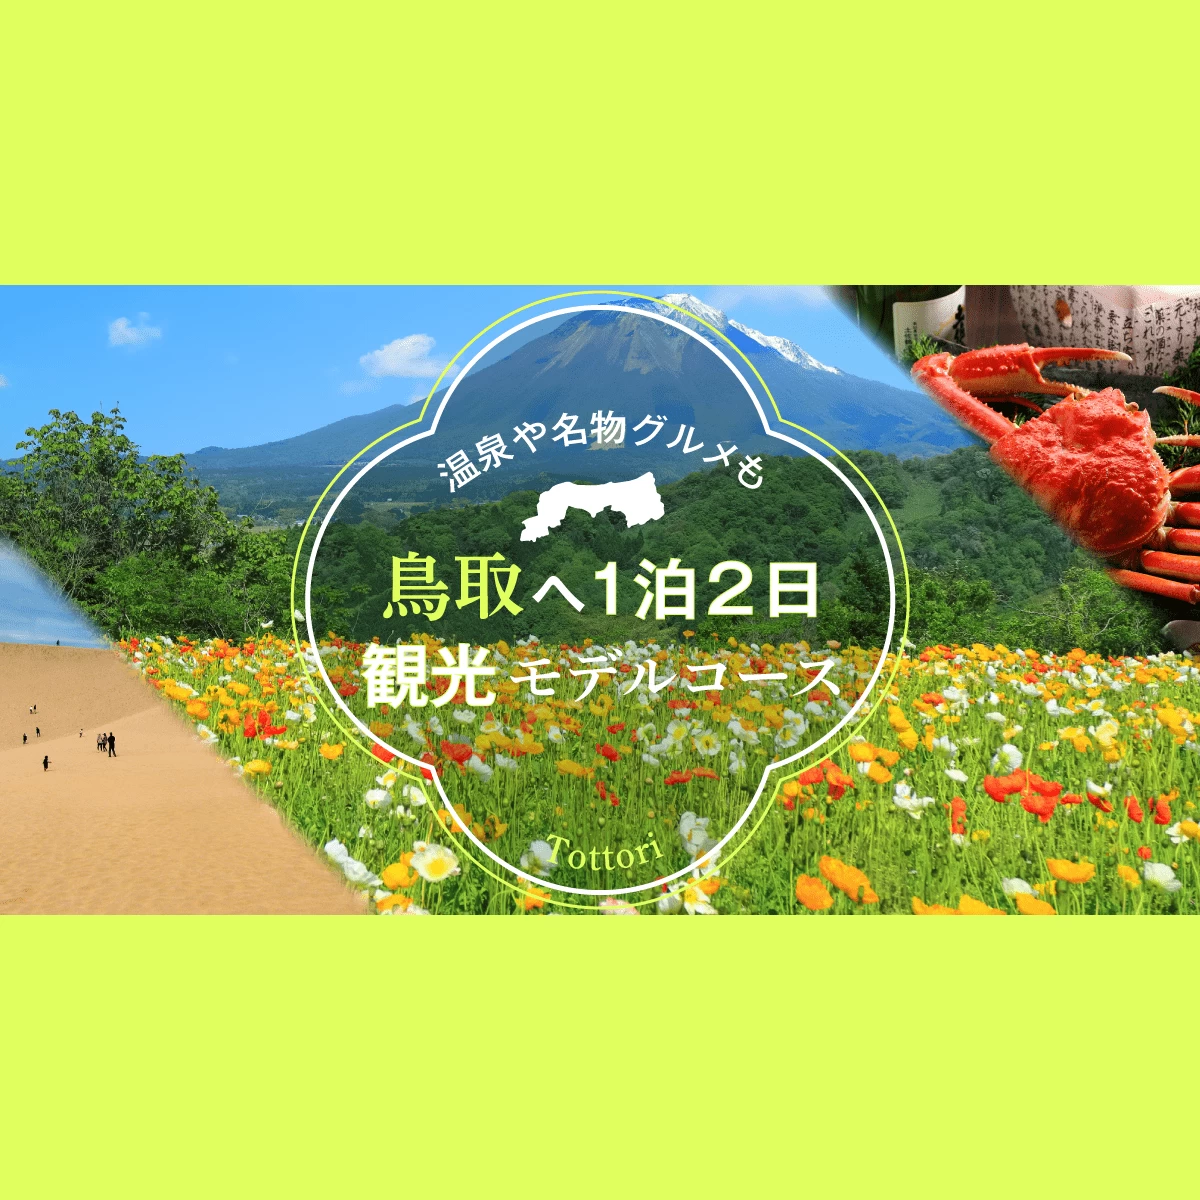 温泉や名物グルメも 鳥取へ1泊2日 観光モデルコース 旅行プランは旅色で